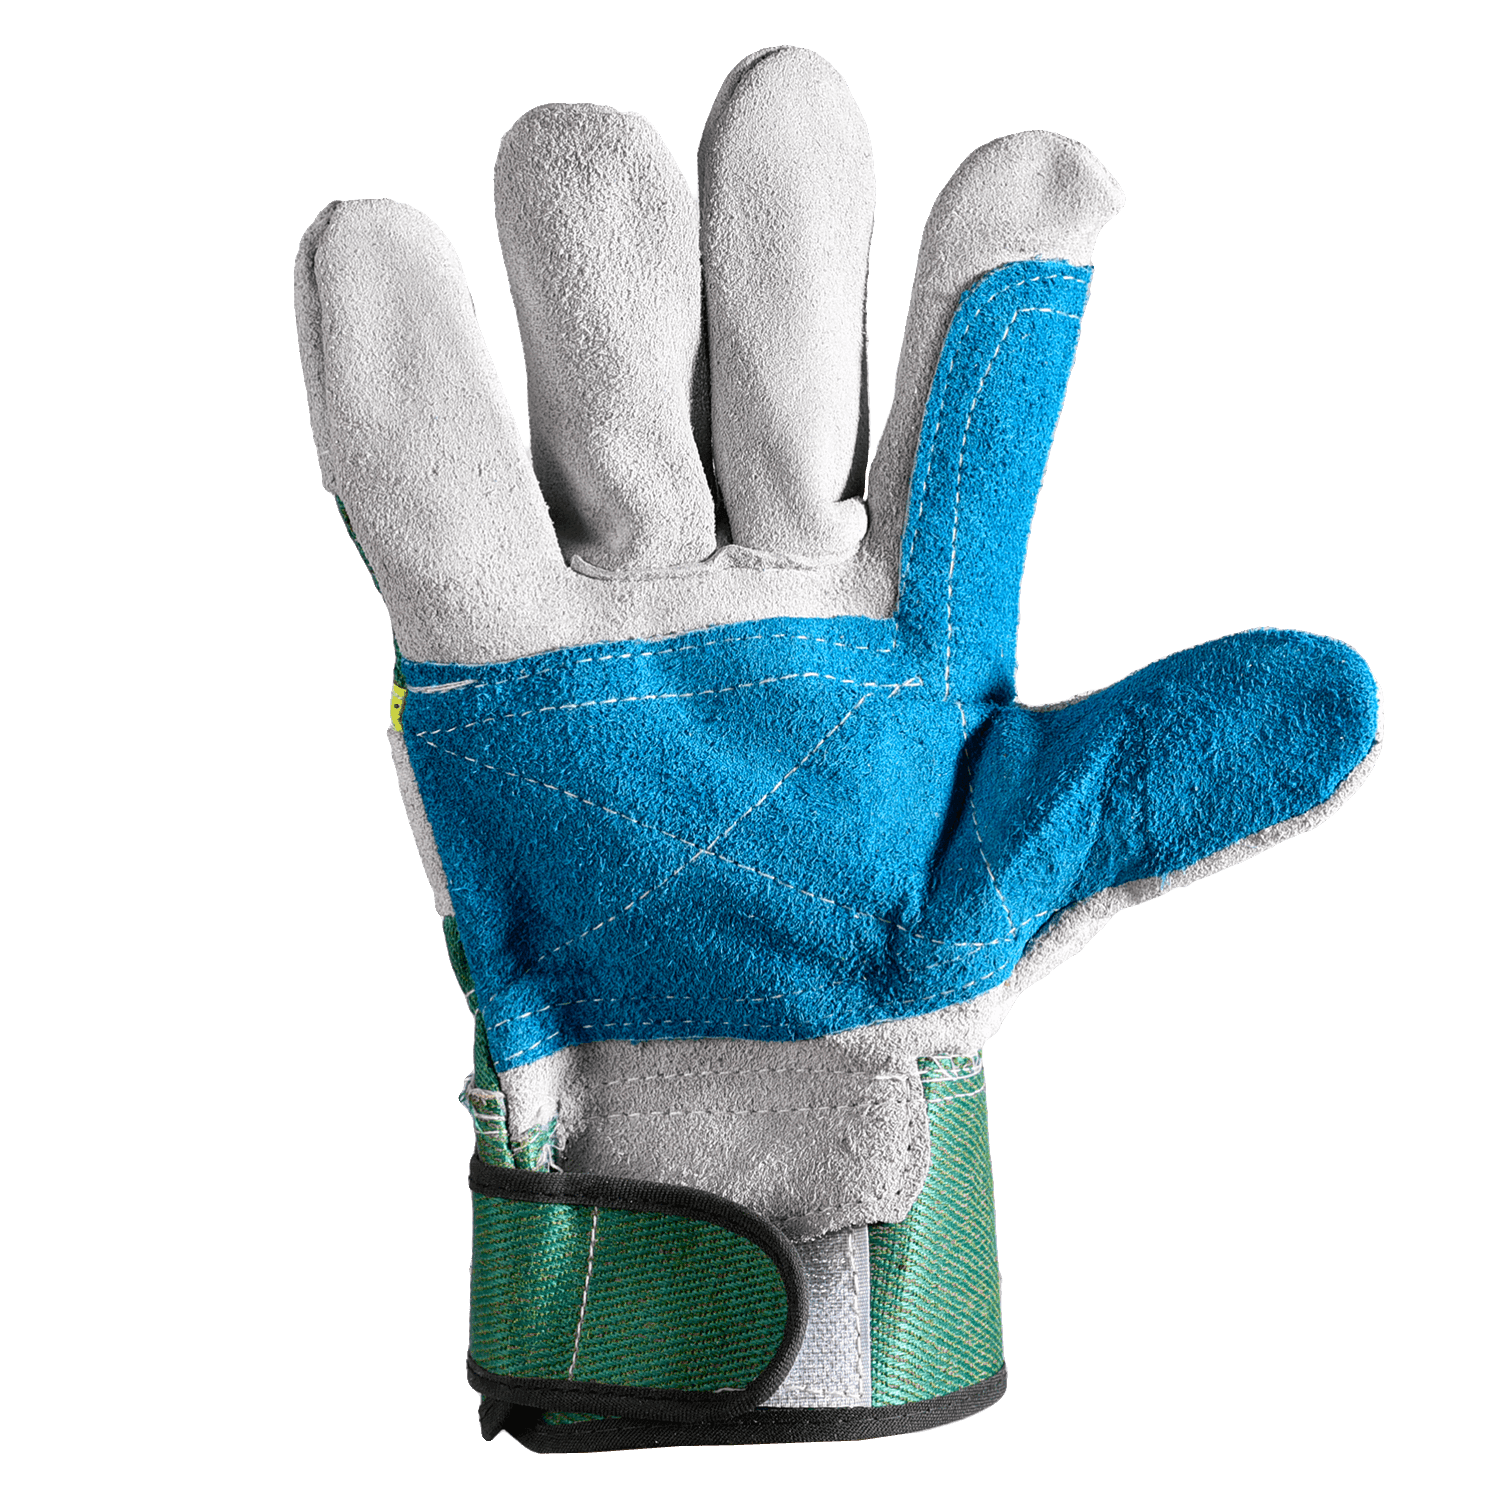 Safeyear Heavy Duty Work Gloves, Gardening Leather Safety Gloves (2 Pairs)